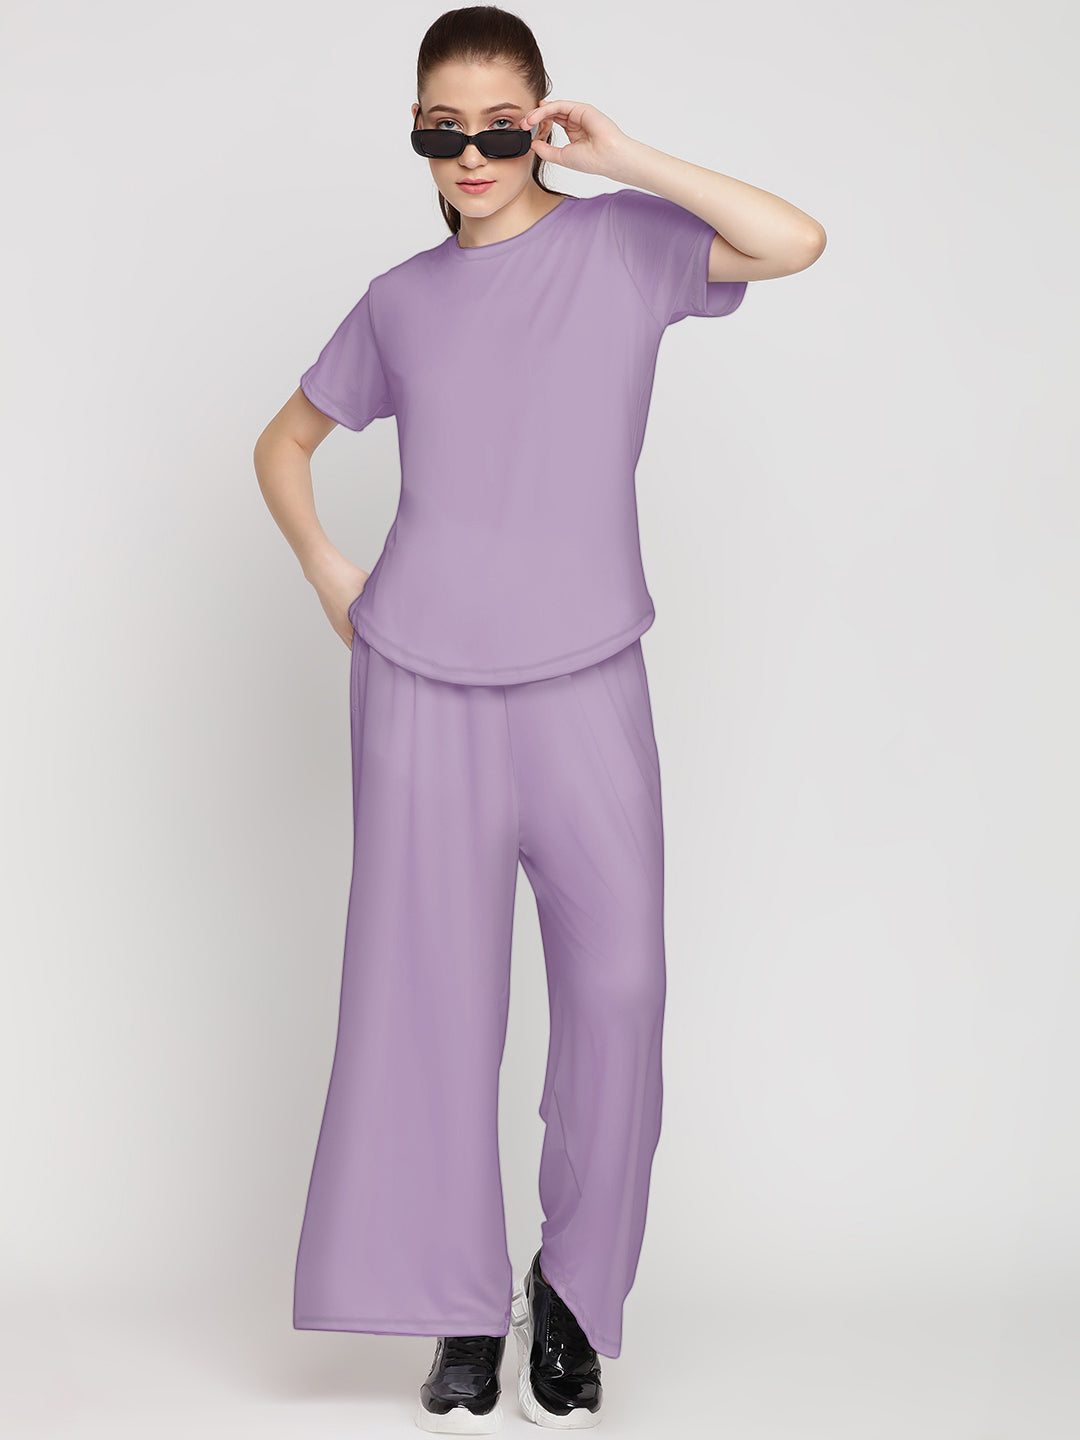 Harmony Pants & Tee Set - Purple